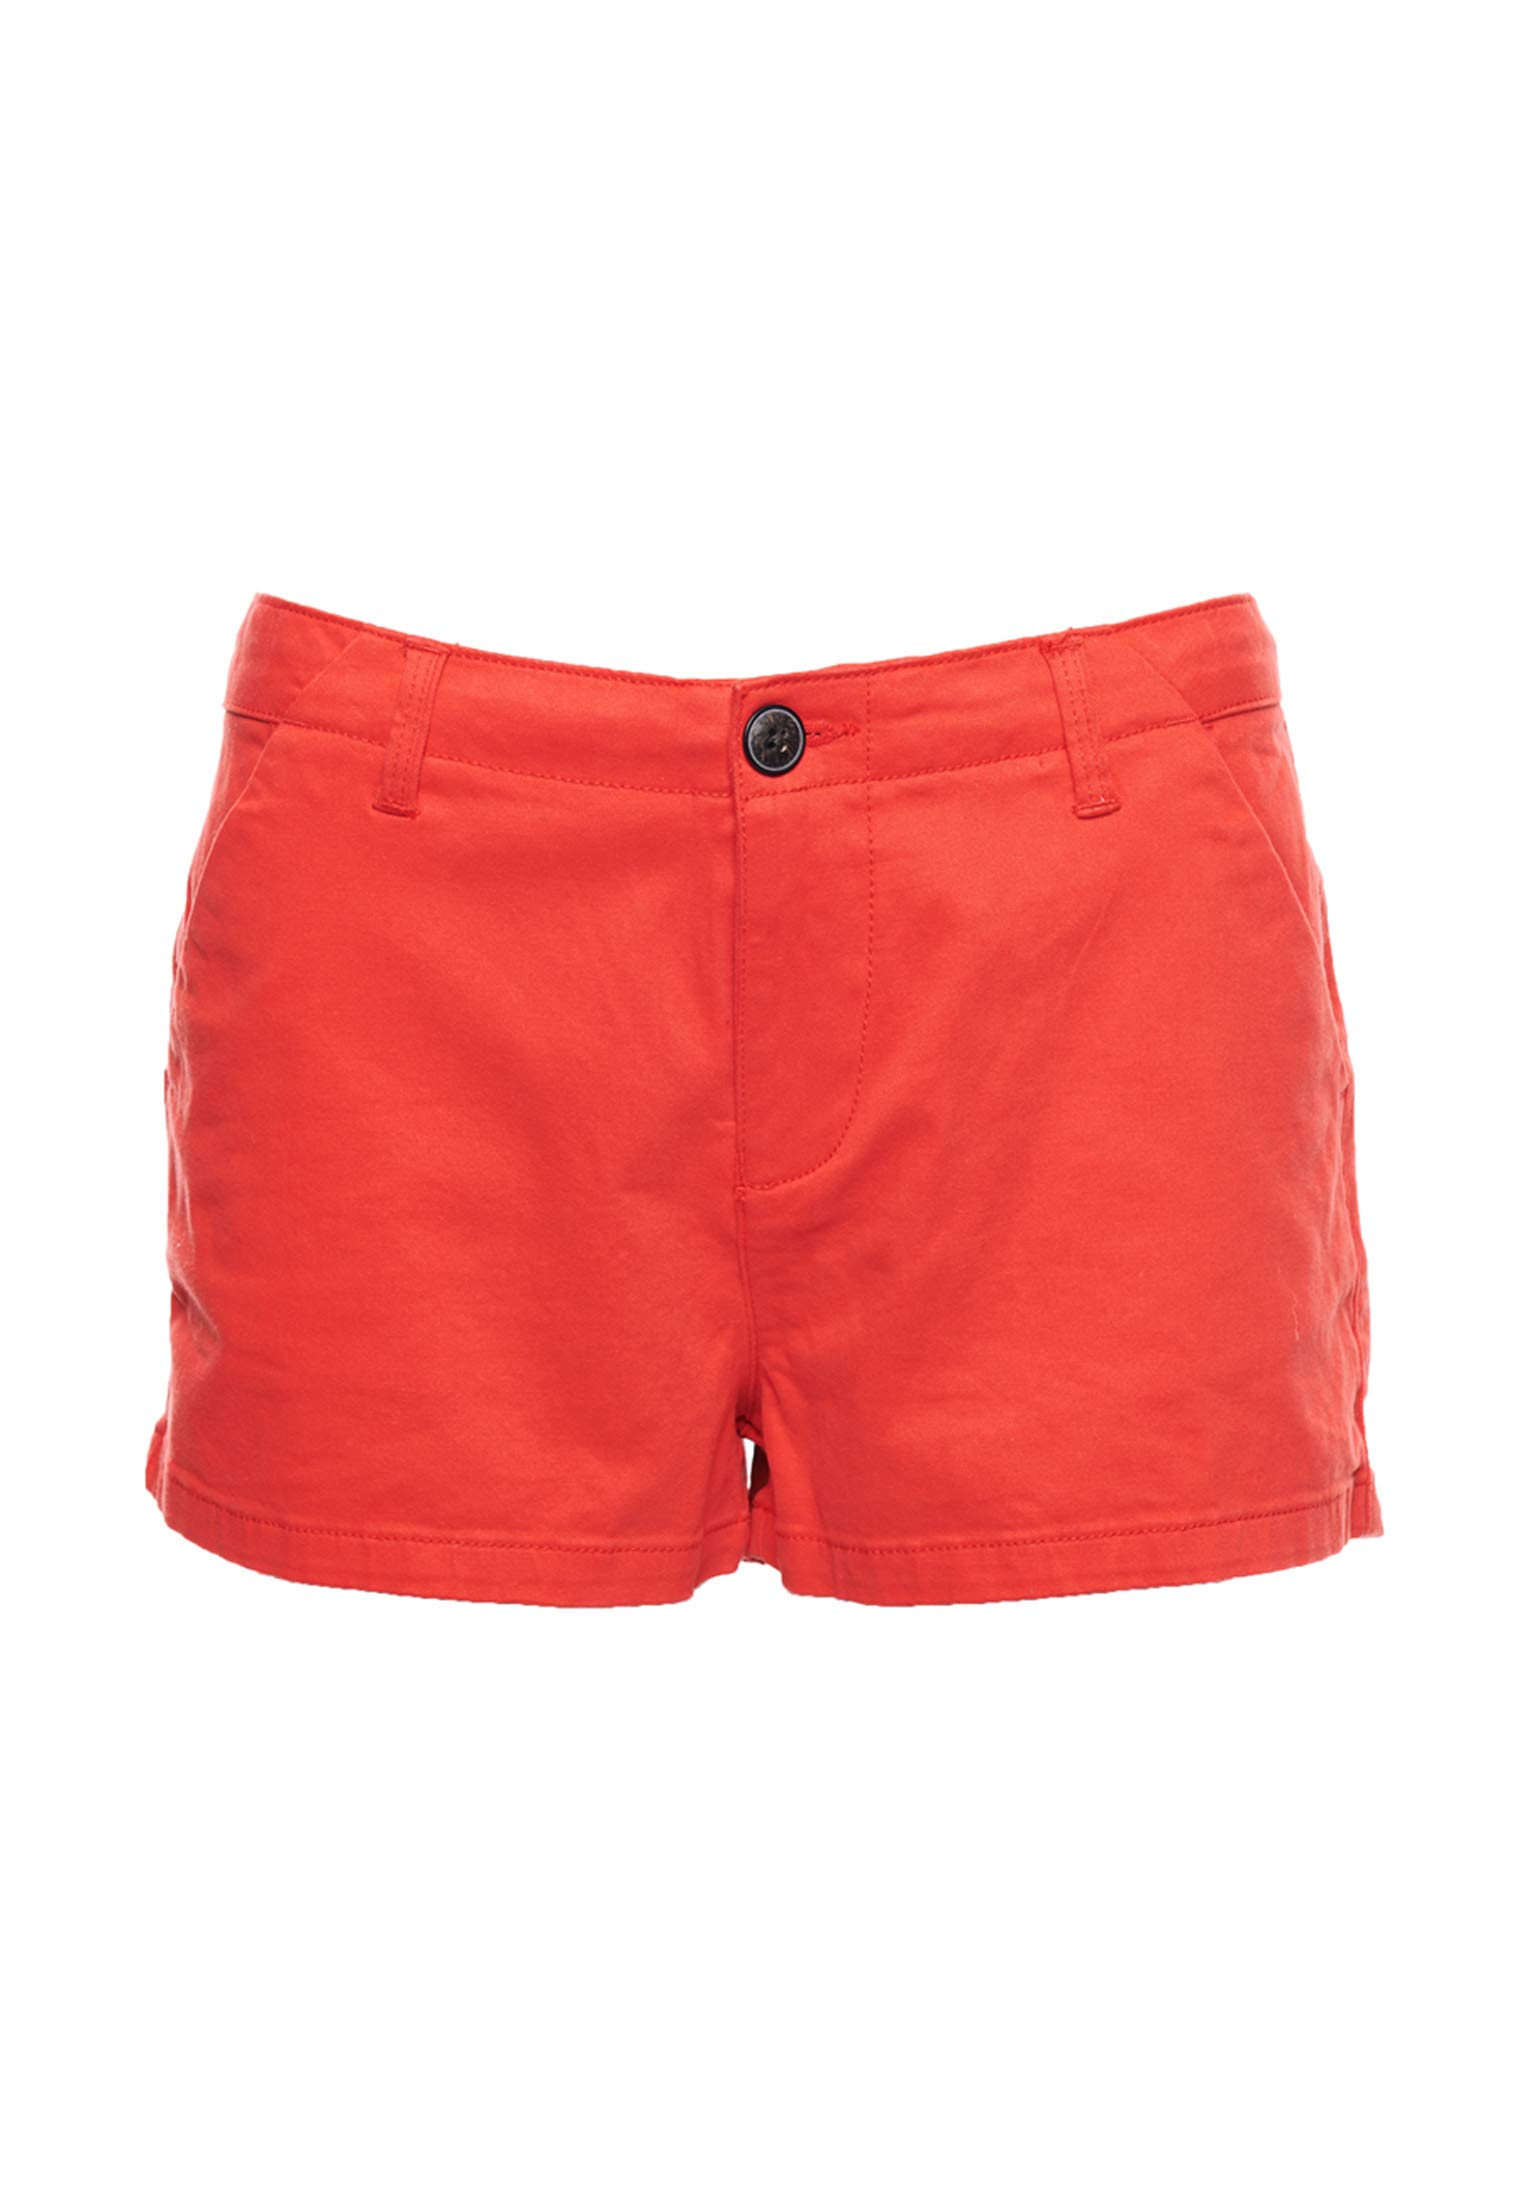 Superdry Damen Schlag Shorts Chino Hot Short, Rot (Apple Red OMG), 40 (Herstellergröße: M)